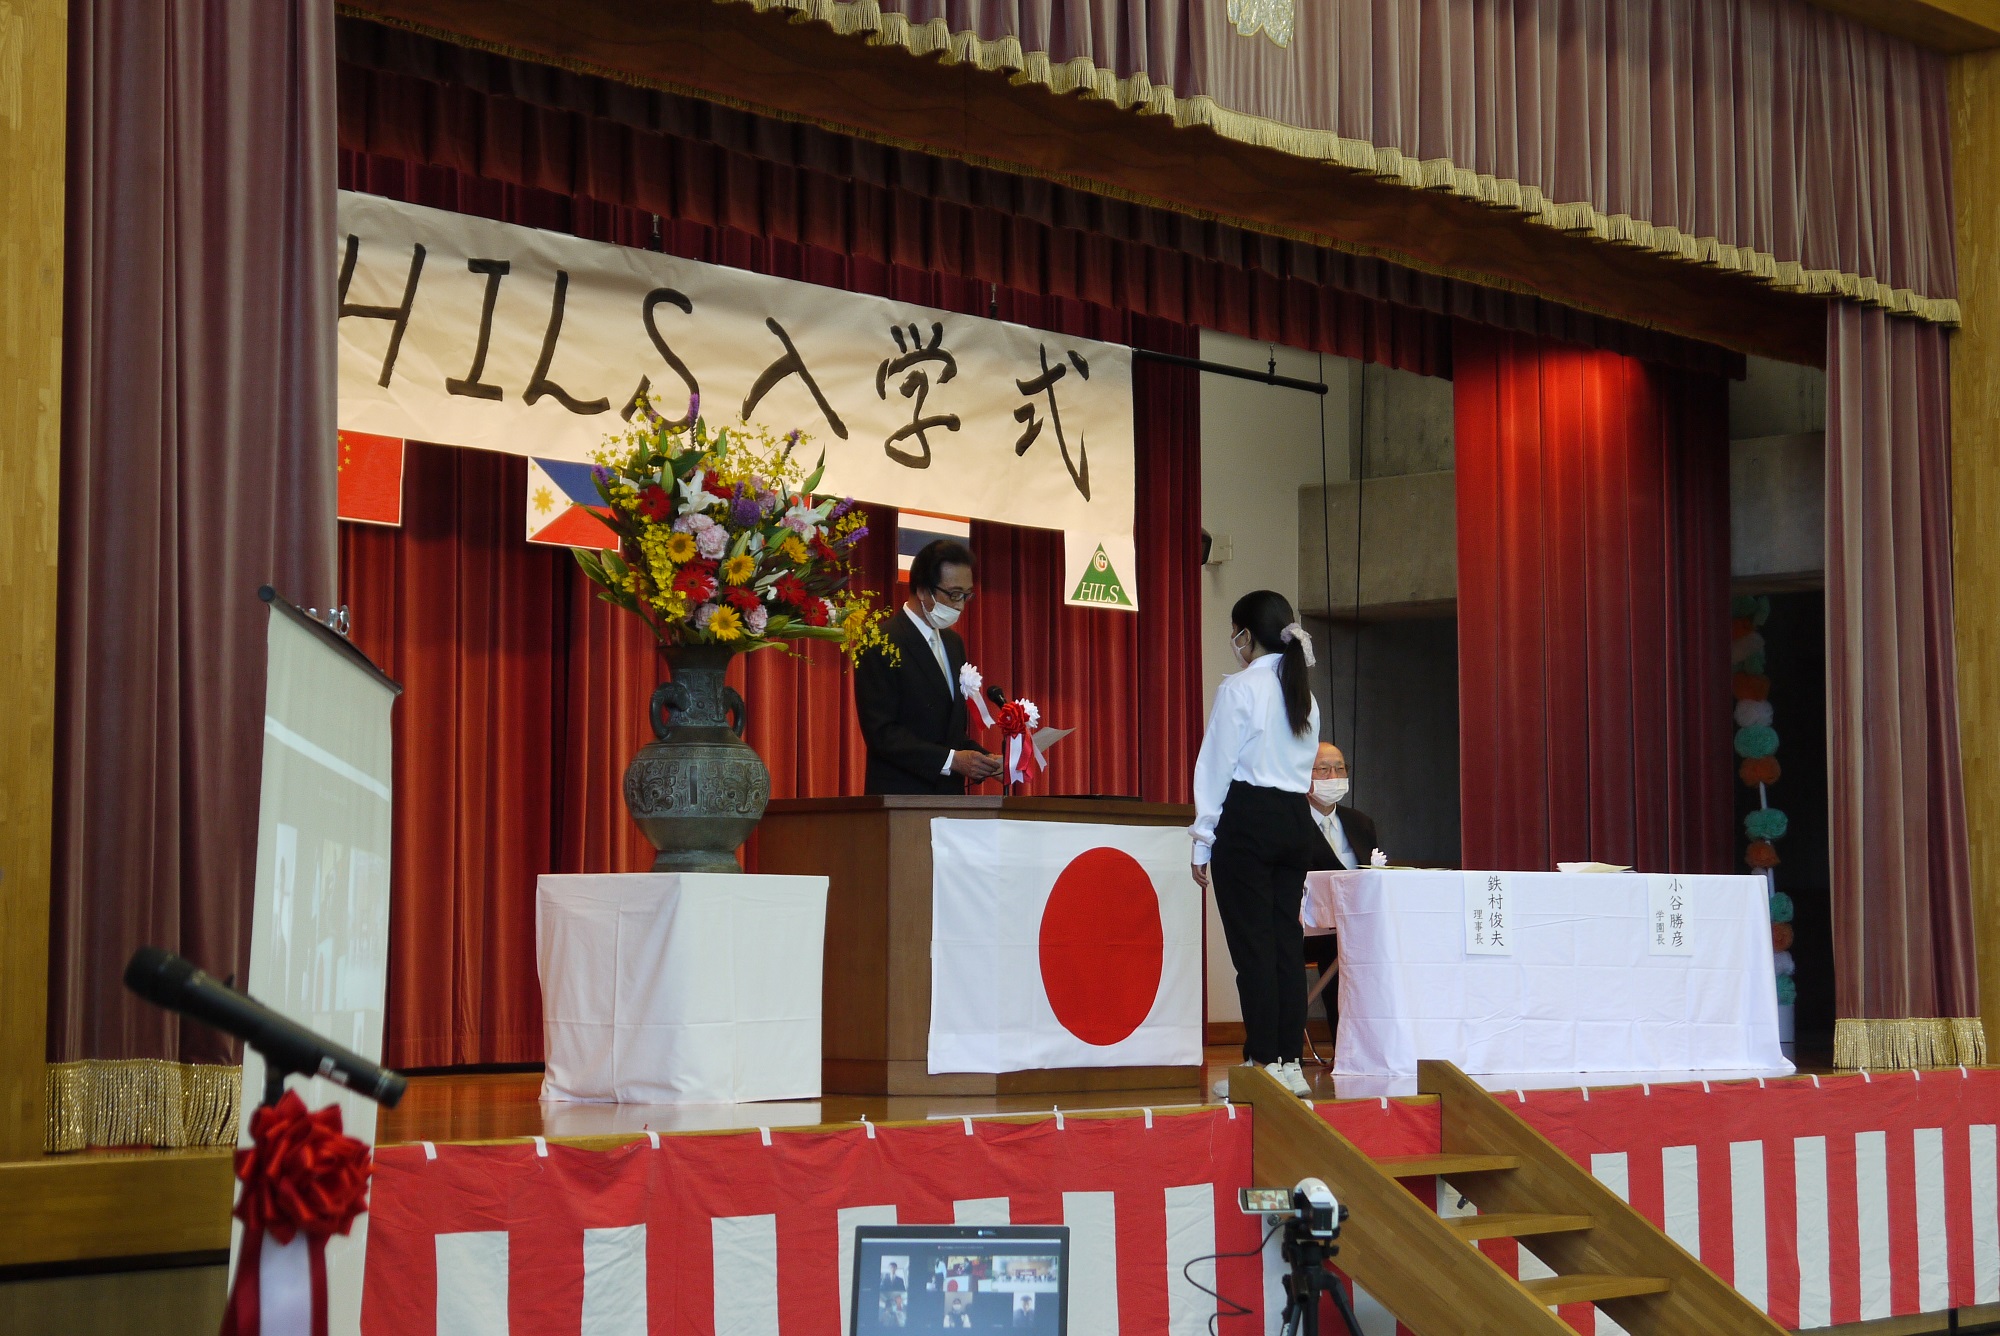 School entrance ceremony